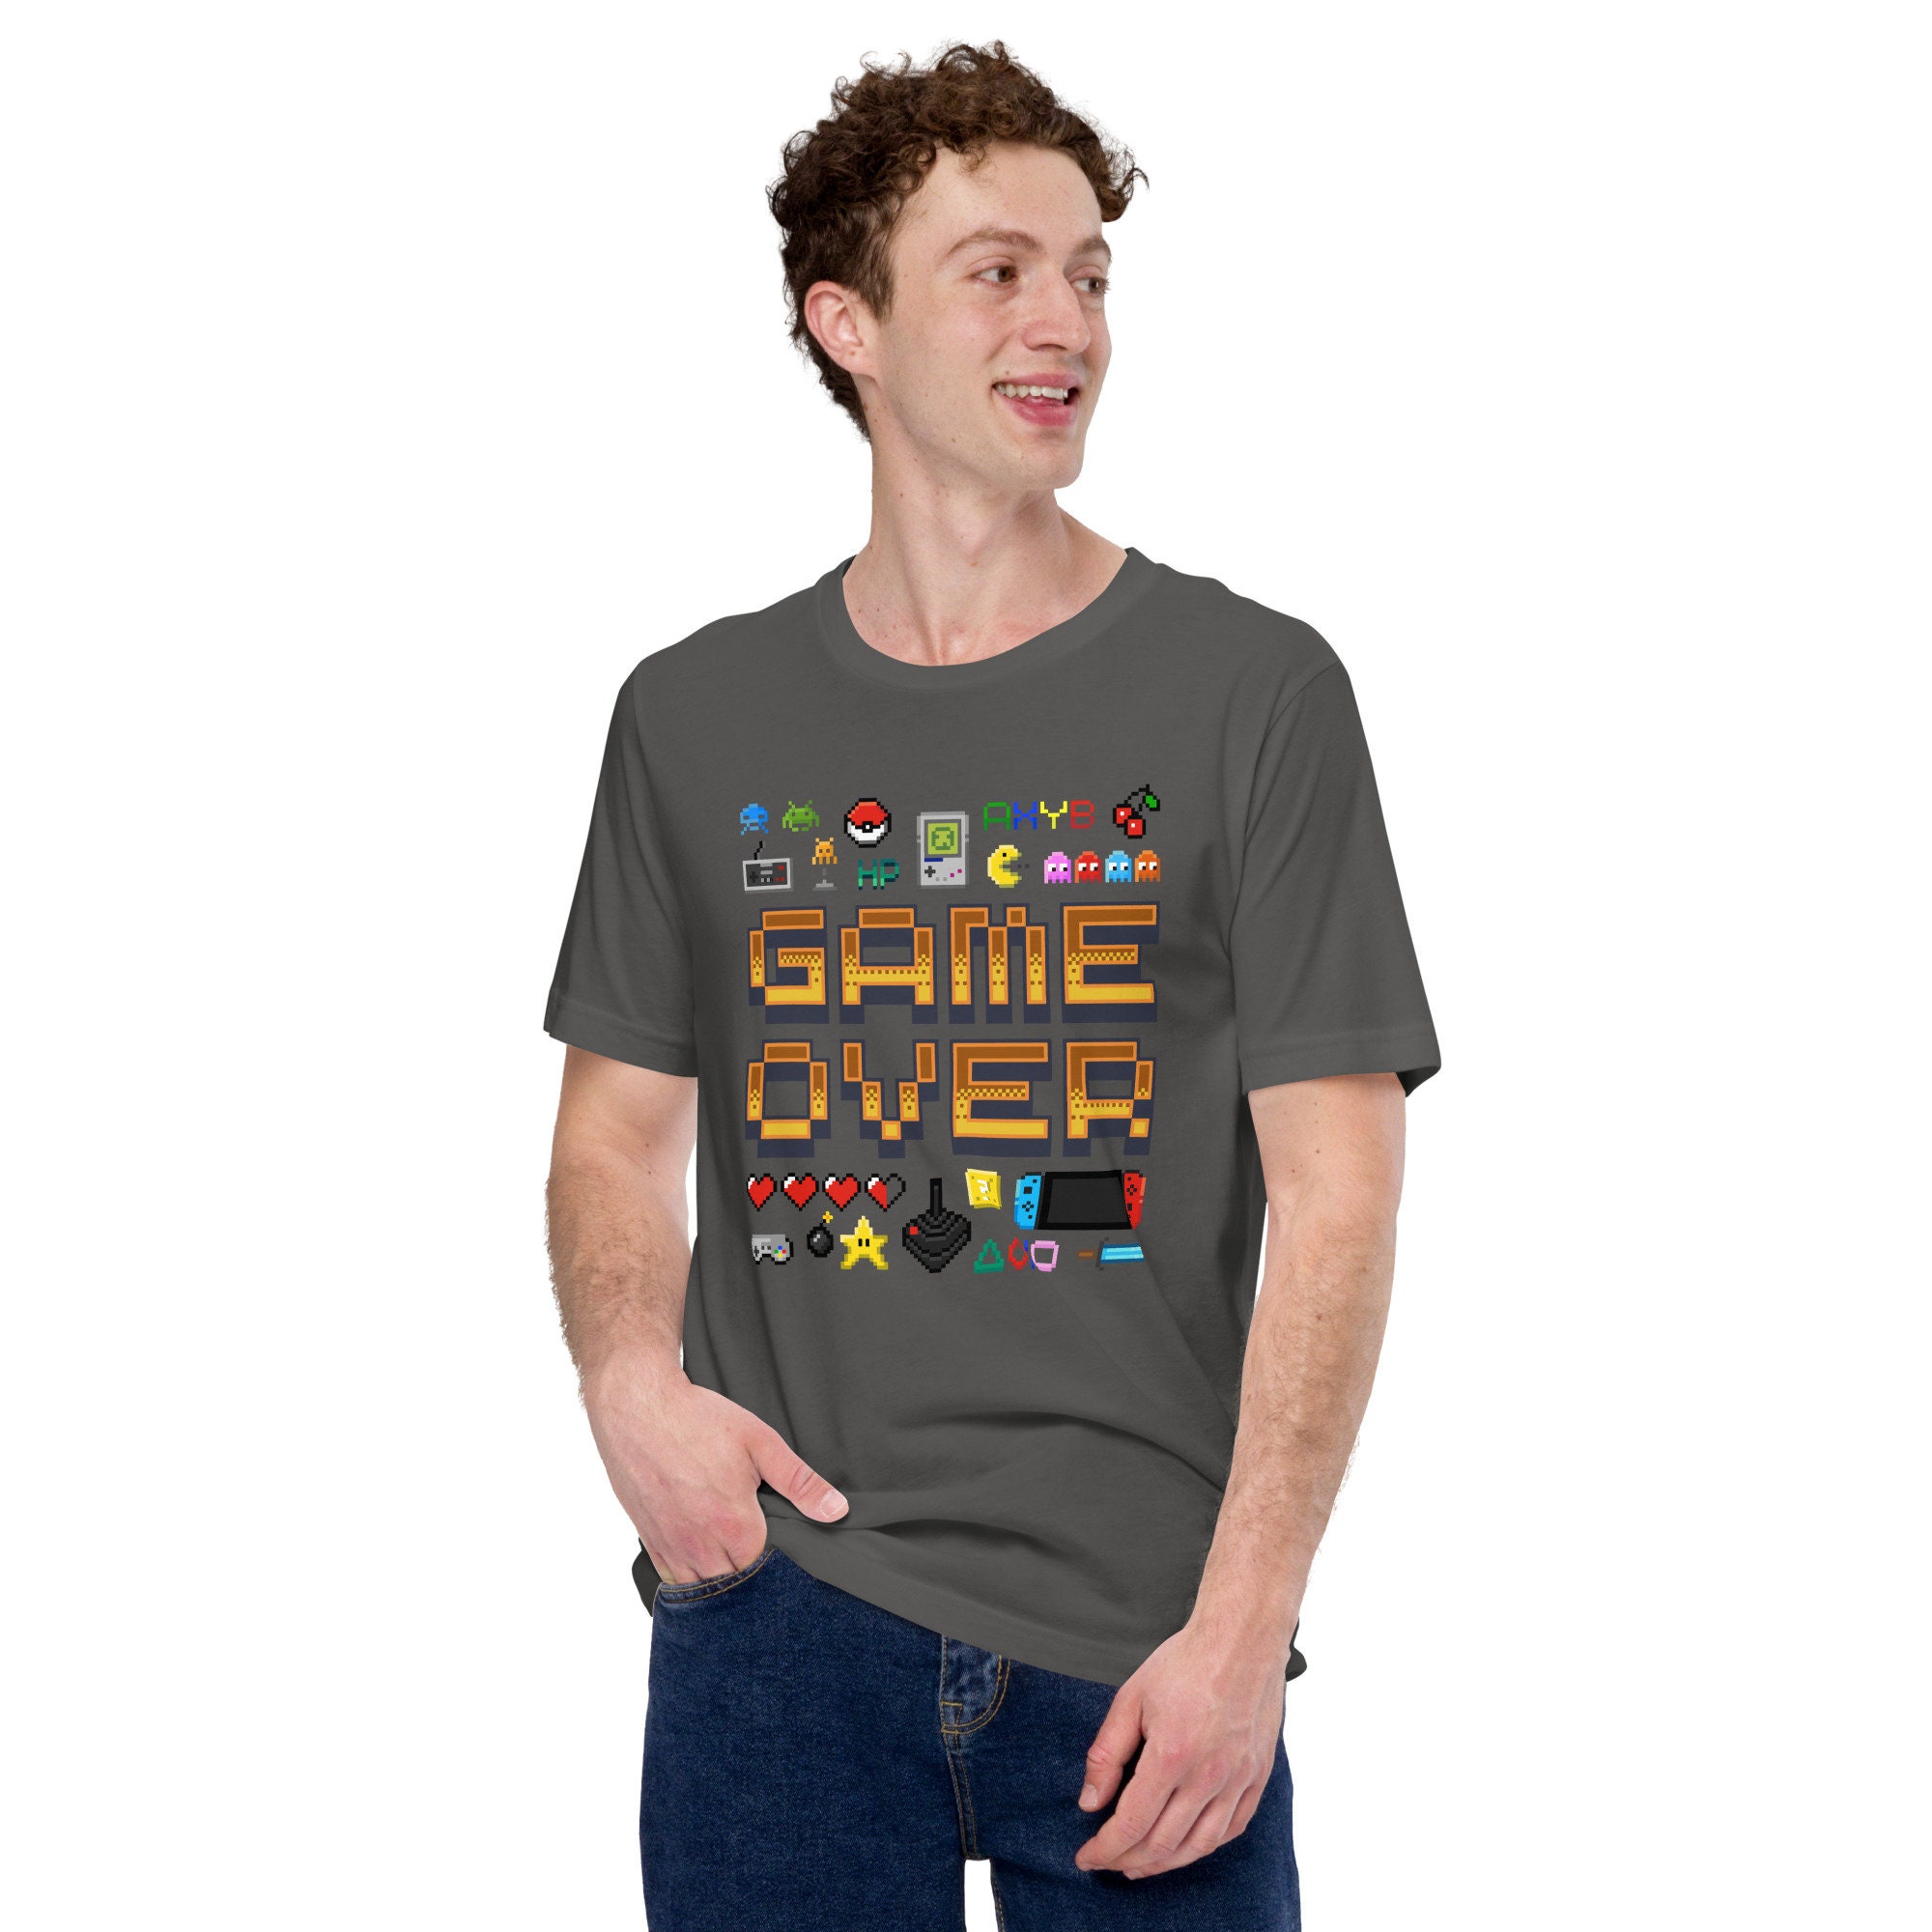 Game Over Pixel Graphic Art T-shirt Fun Gamer Geek Gift - Etsy UK